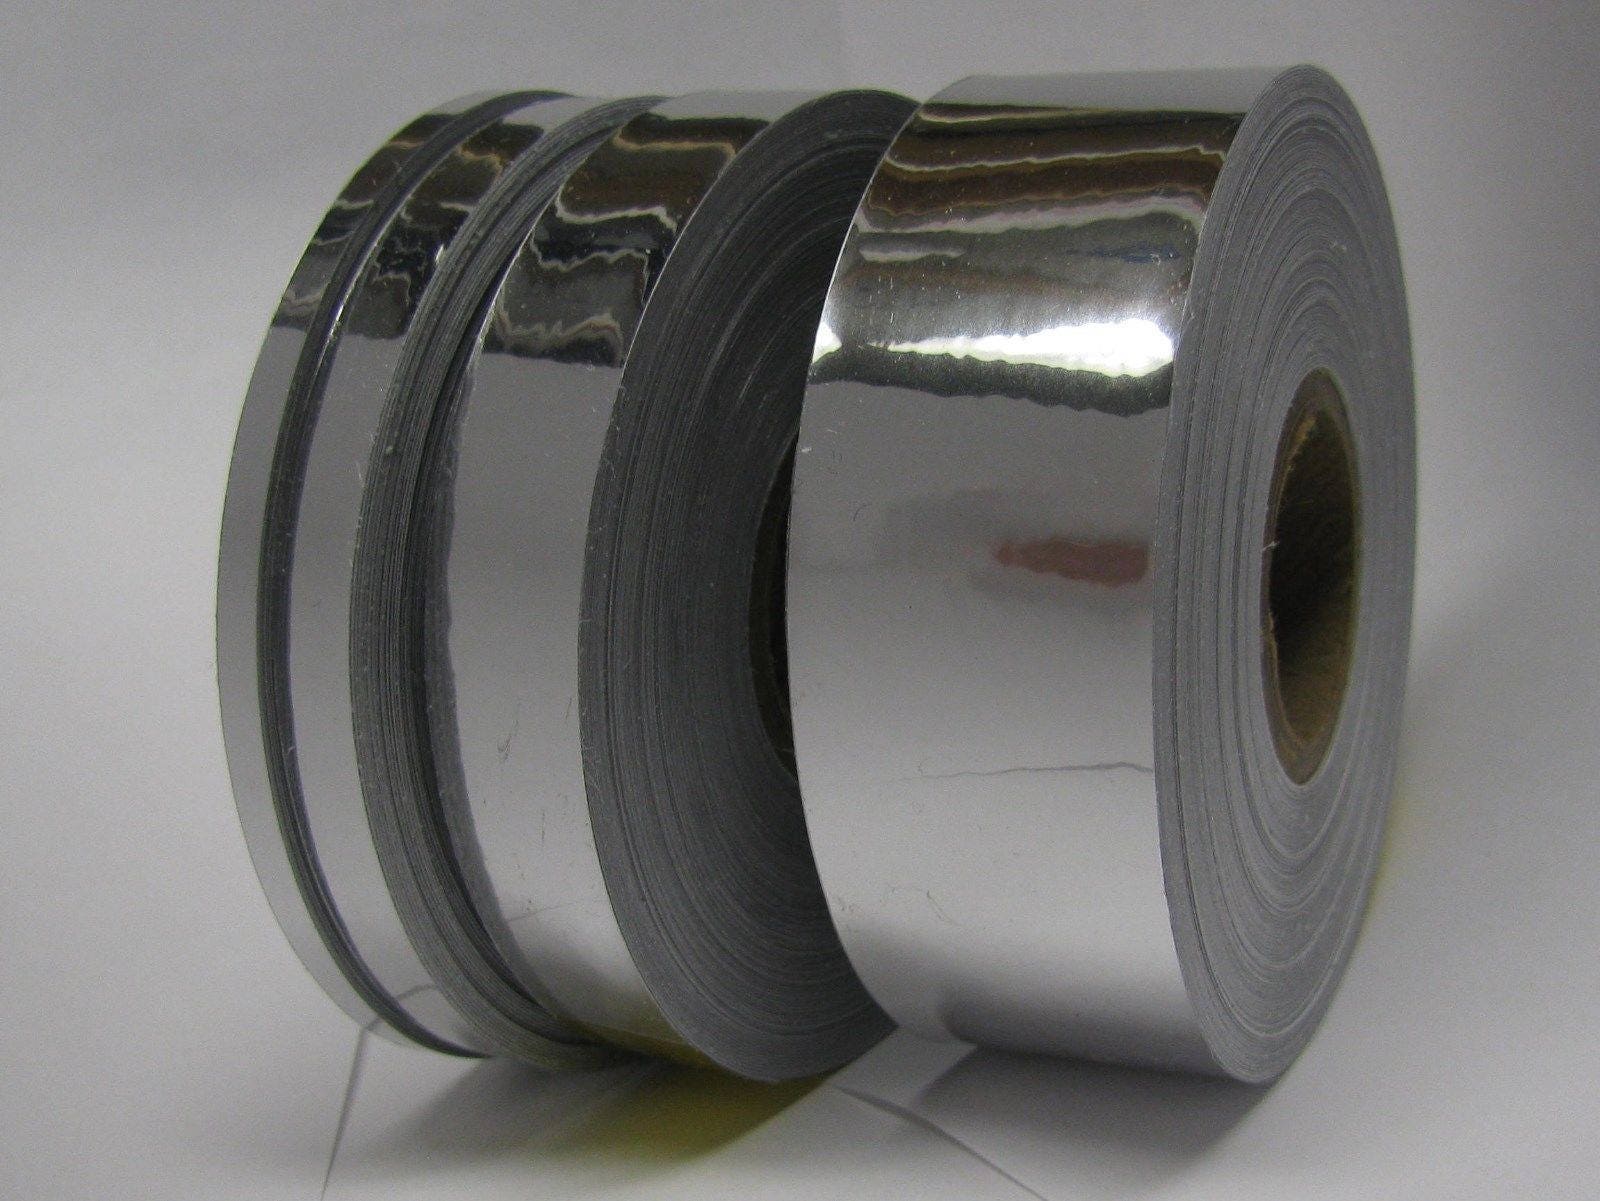 Zilveren chroom tape zelfklevende automotive grade België